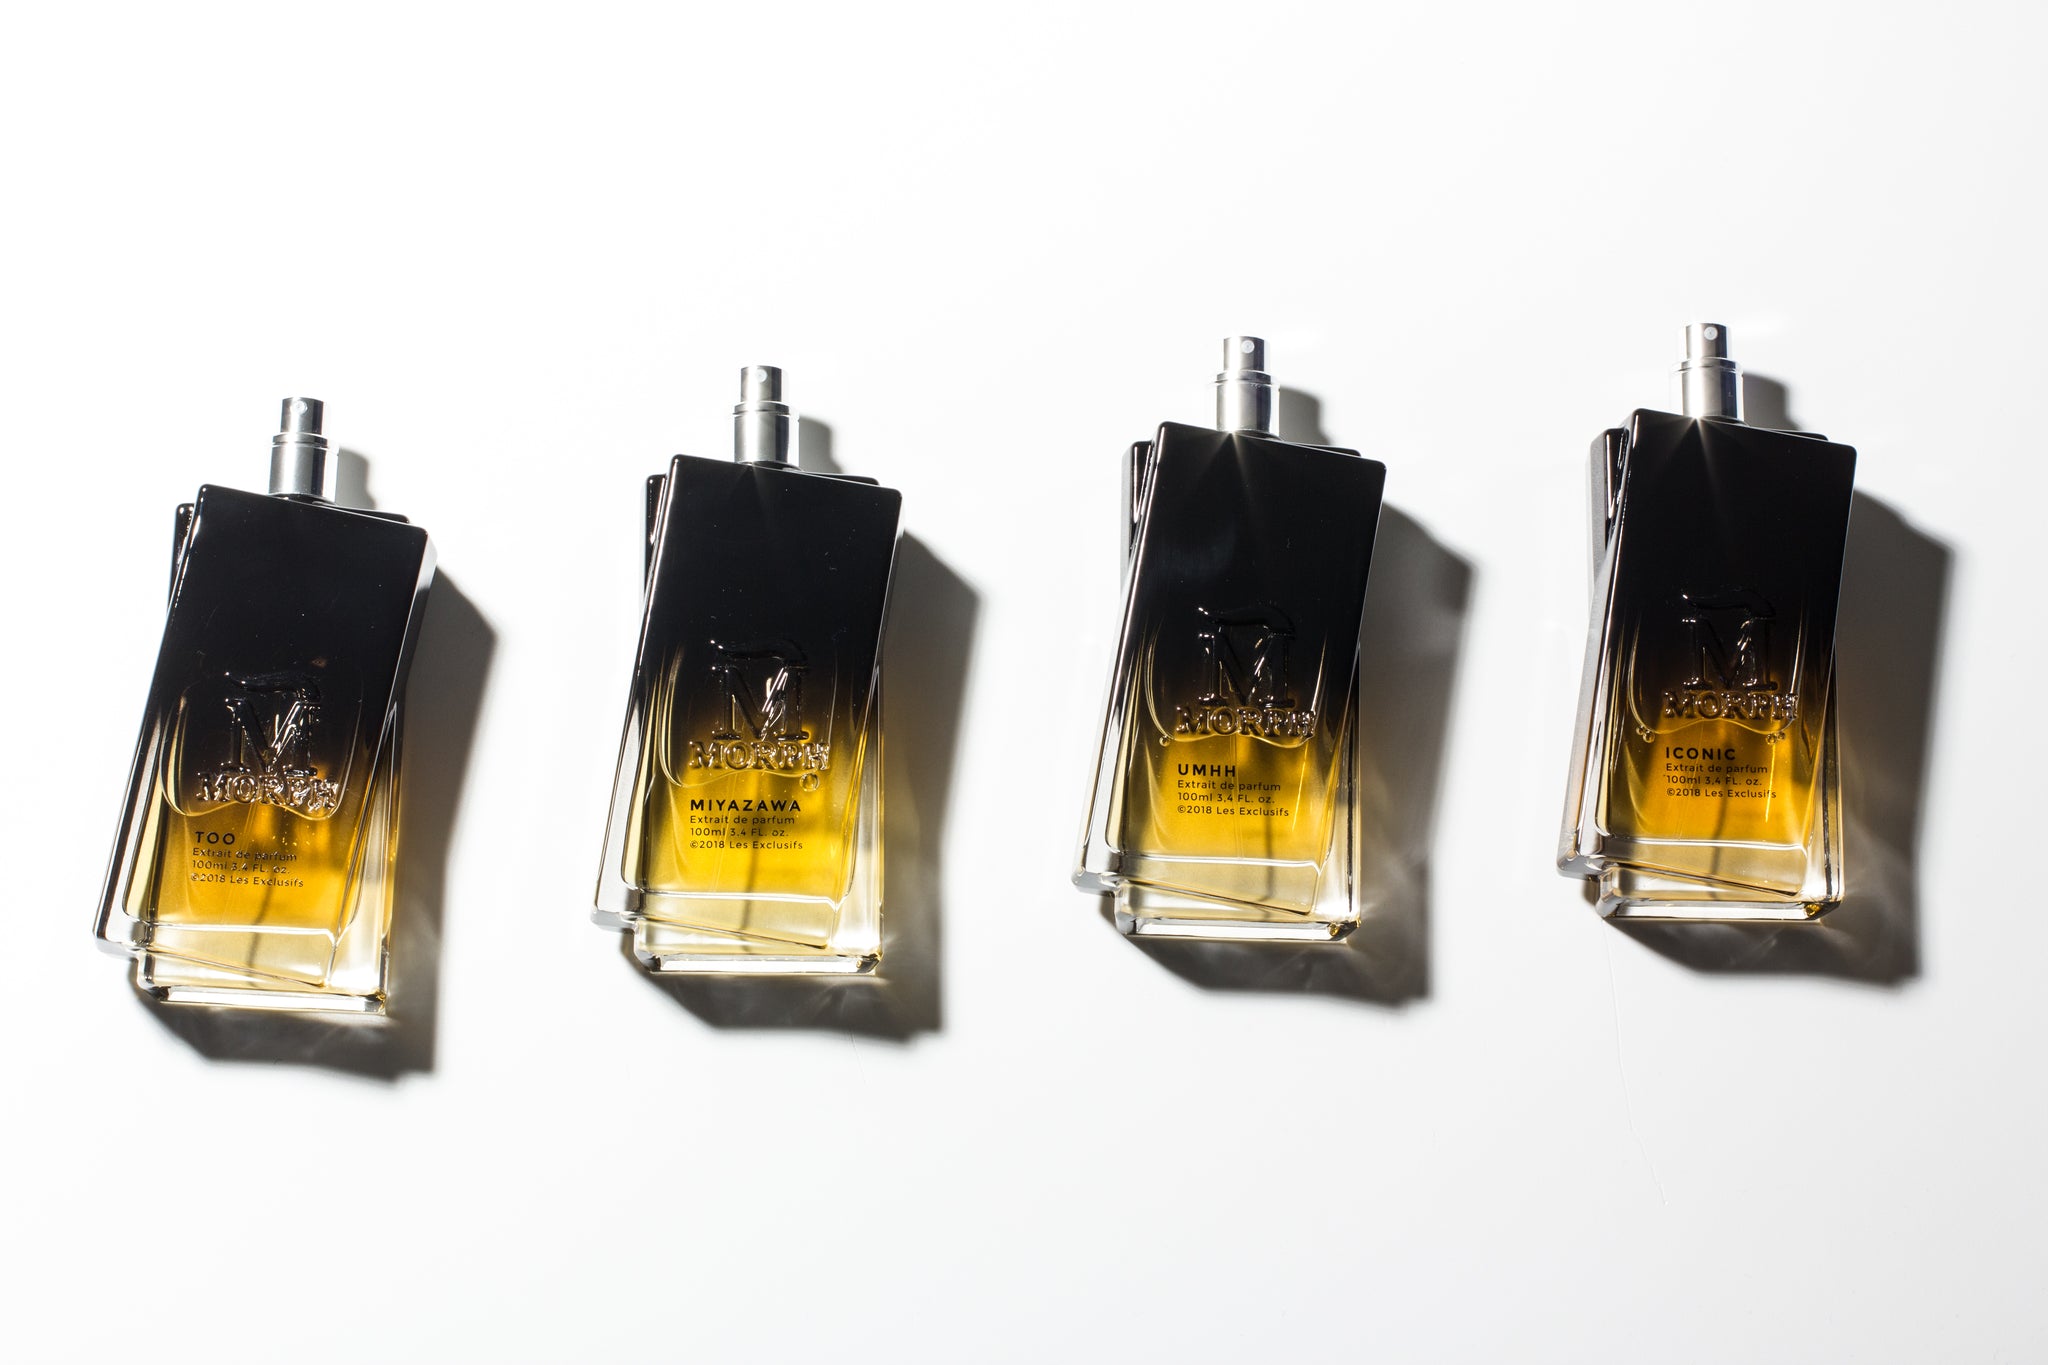 rij met morph parfumflessen uit de exclusif collectie